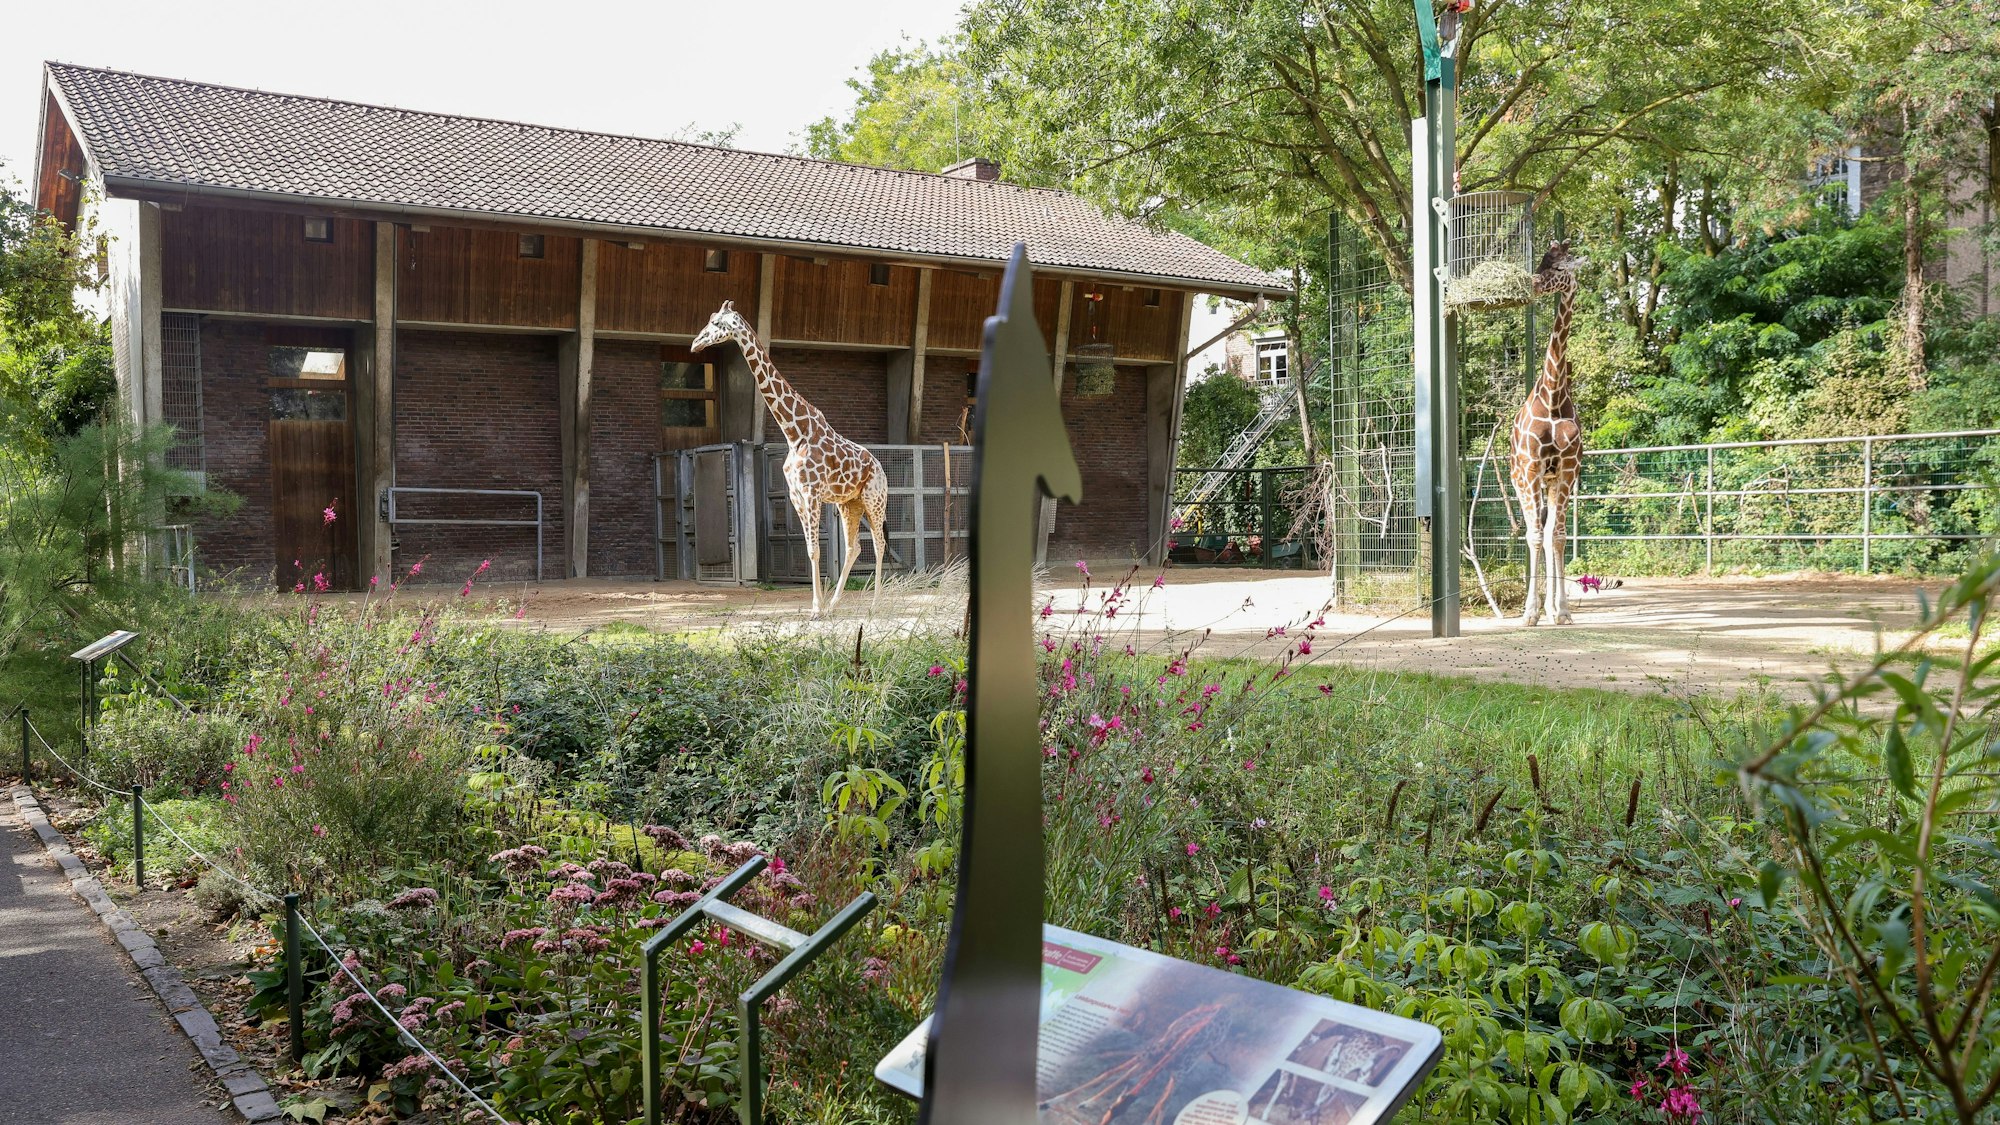 Zwei Giraffen auf der Außenanlage im Kölner Zoo.